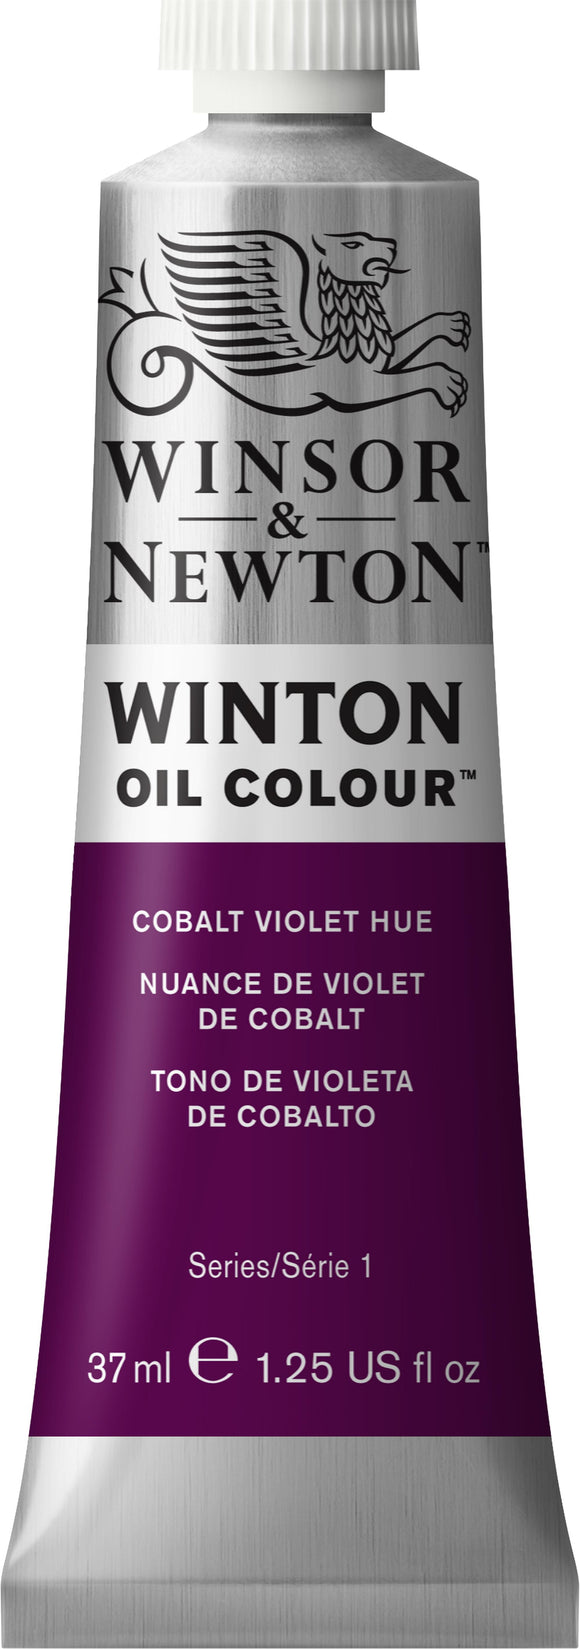 Winsor & Newton Winton Oil Colour Cobalt Violet Hue 37Ml